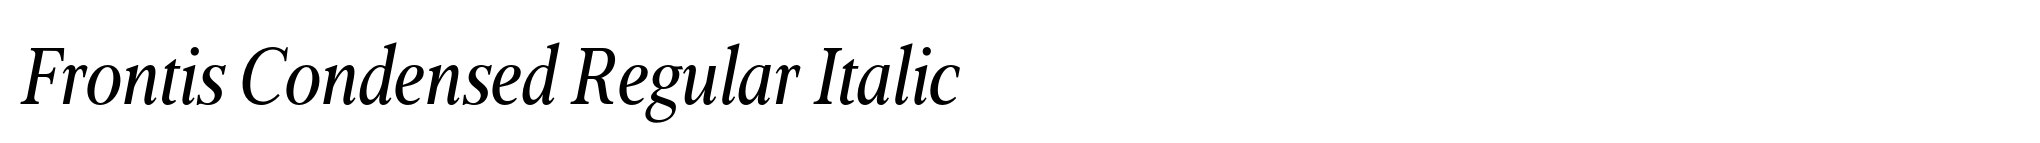 Frontis Condensed Regular Italic image